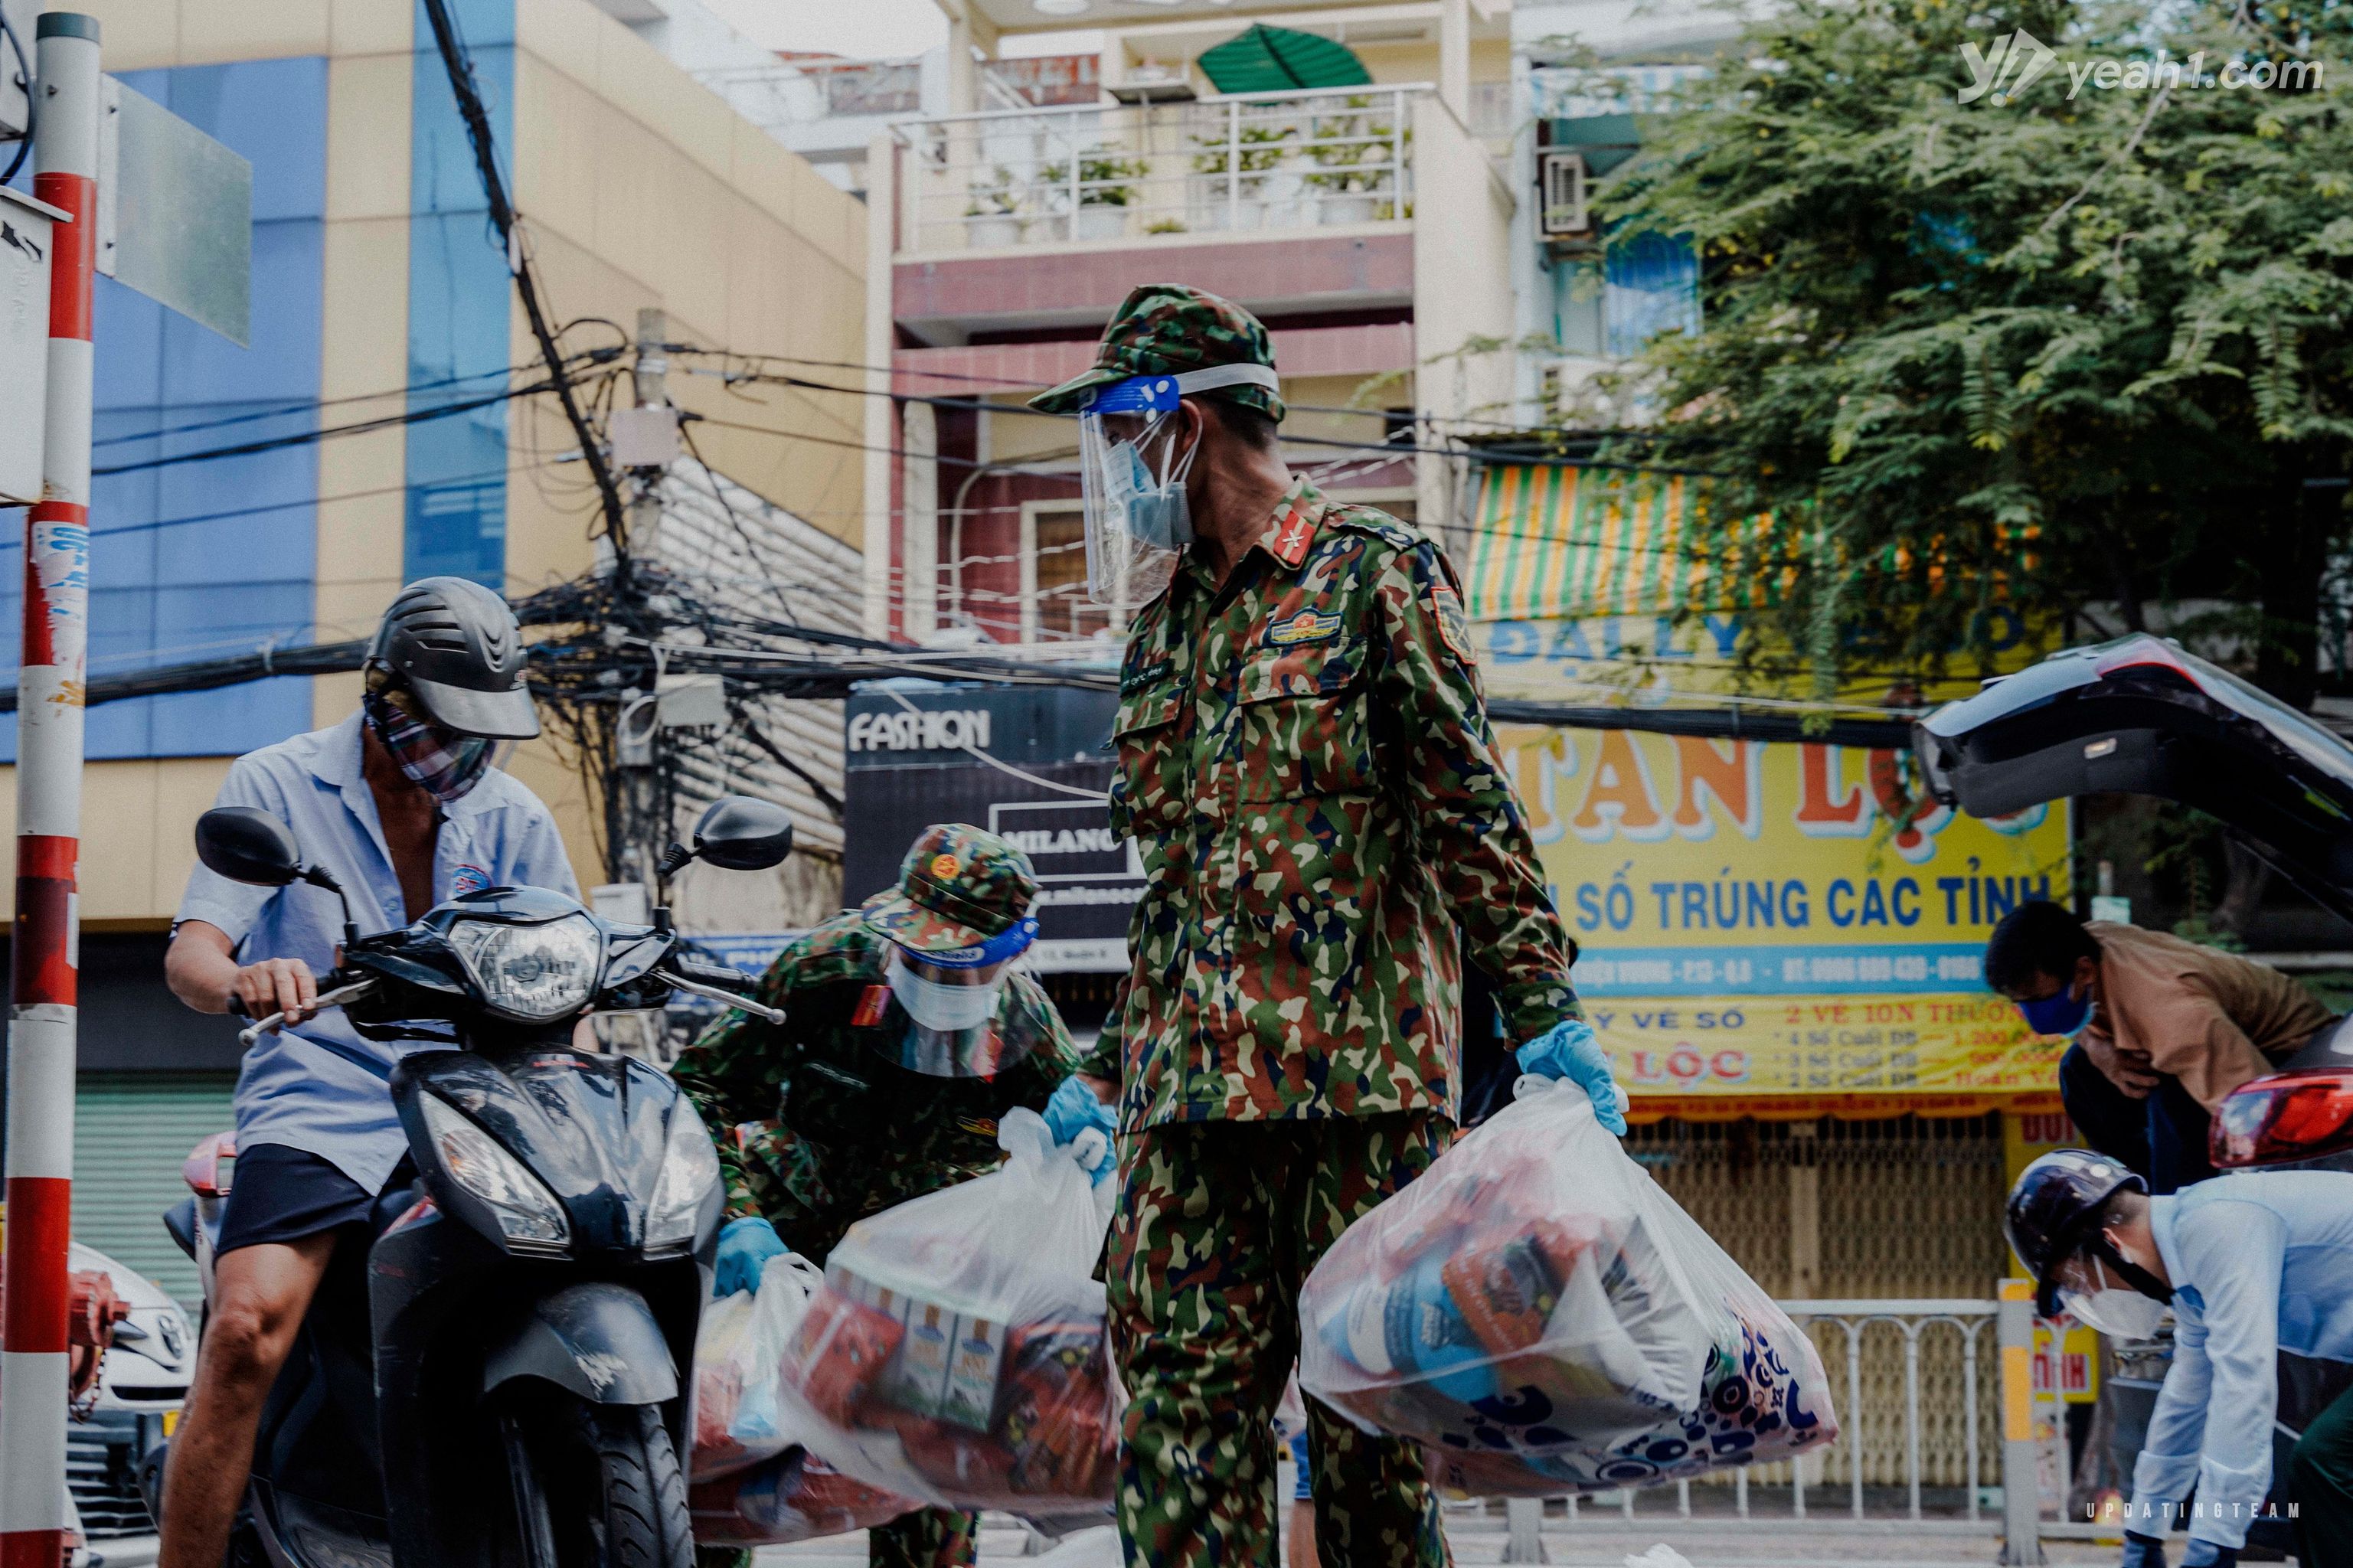 Các chiến sĩ bộ đội đang phát túi an sinh cho người dân Sài Gòn. Nhìn khối lượng hàng hóa cũng thấy được sự cồng kềnh và sức nặng, nhưng điều này vẫn không ngăn cản được bước chân và sự nhanh nhẹn của họ.